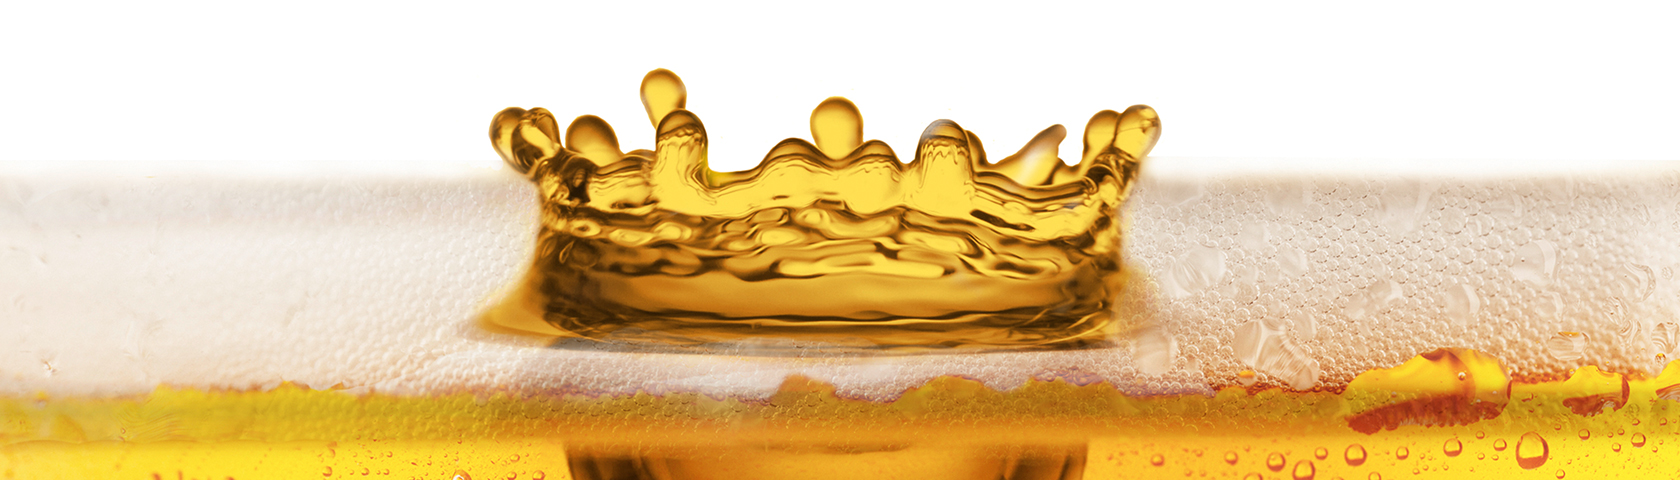 ContiTech-Schläuche für würziges Bier in hygienisch reinen Gläsern